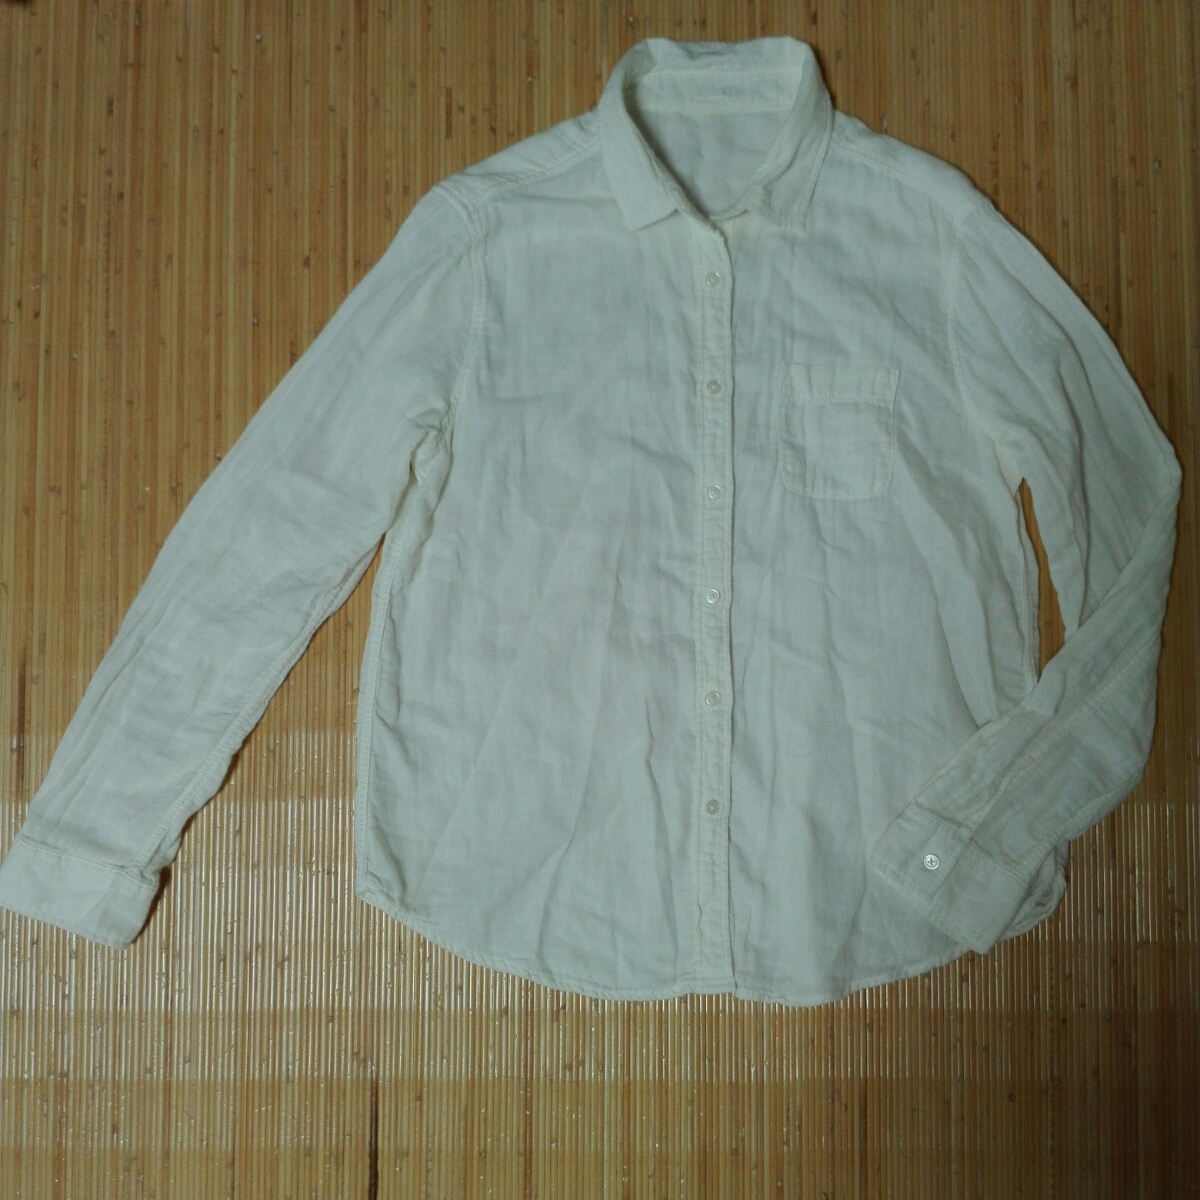 GU ジーユー Lサイズ レディース服 アイボリー色 長袖シャツの画像1